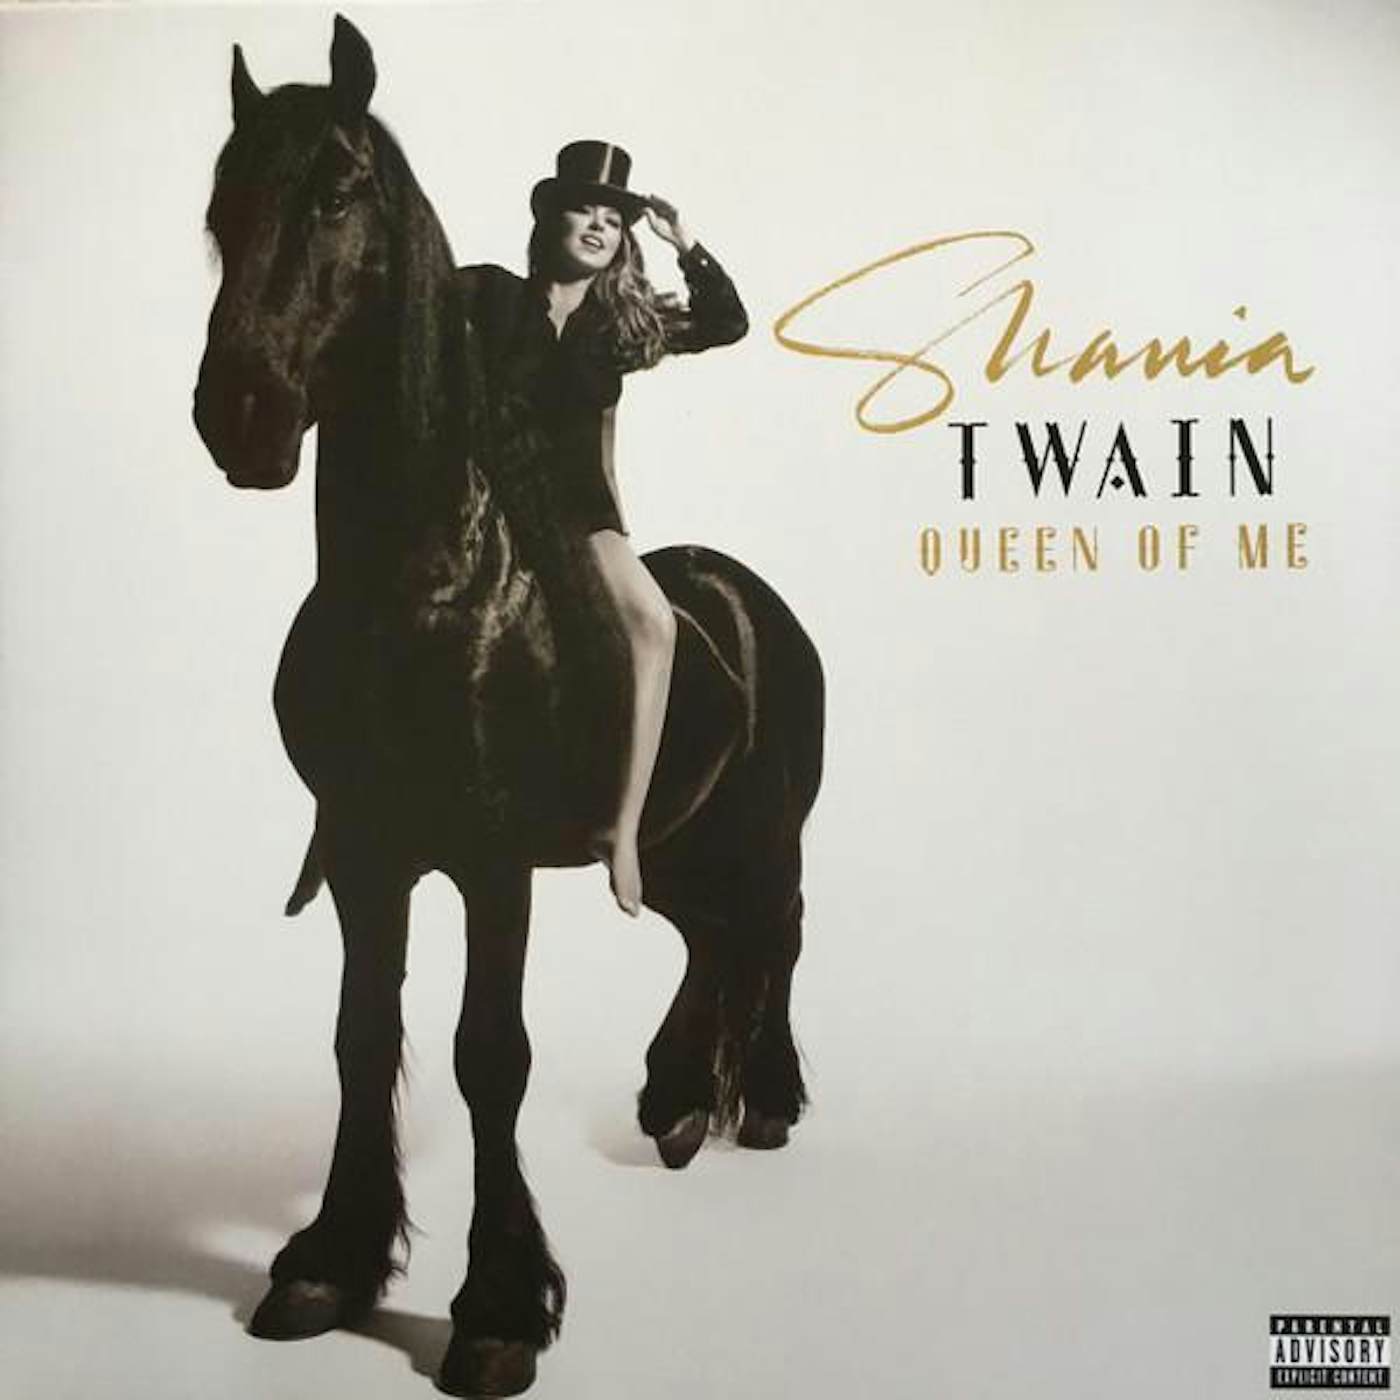 Shania Twain QUEEN OF ME Vinyl Record